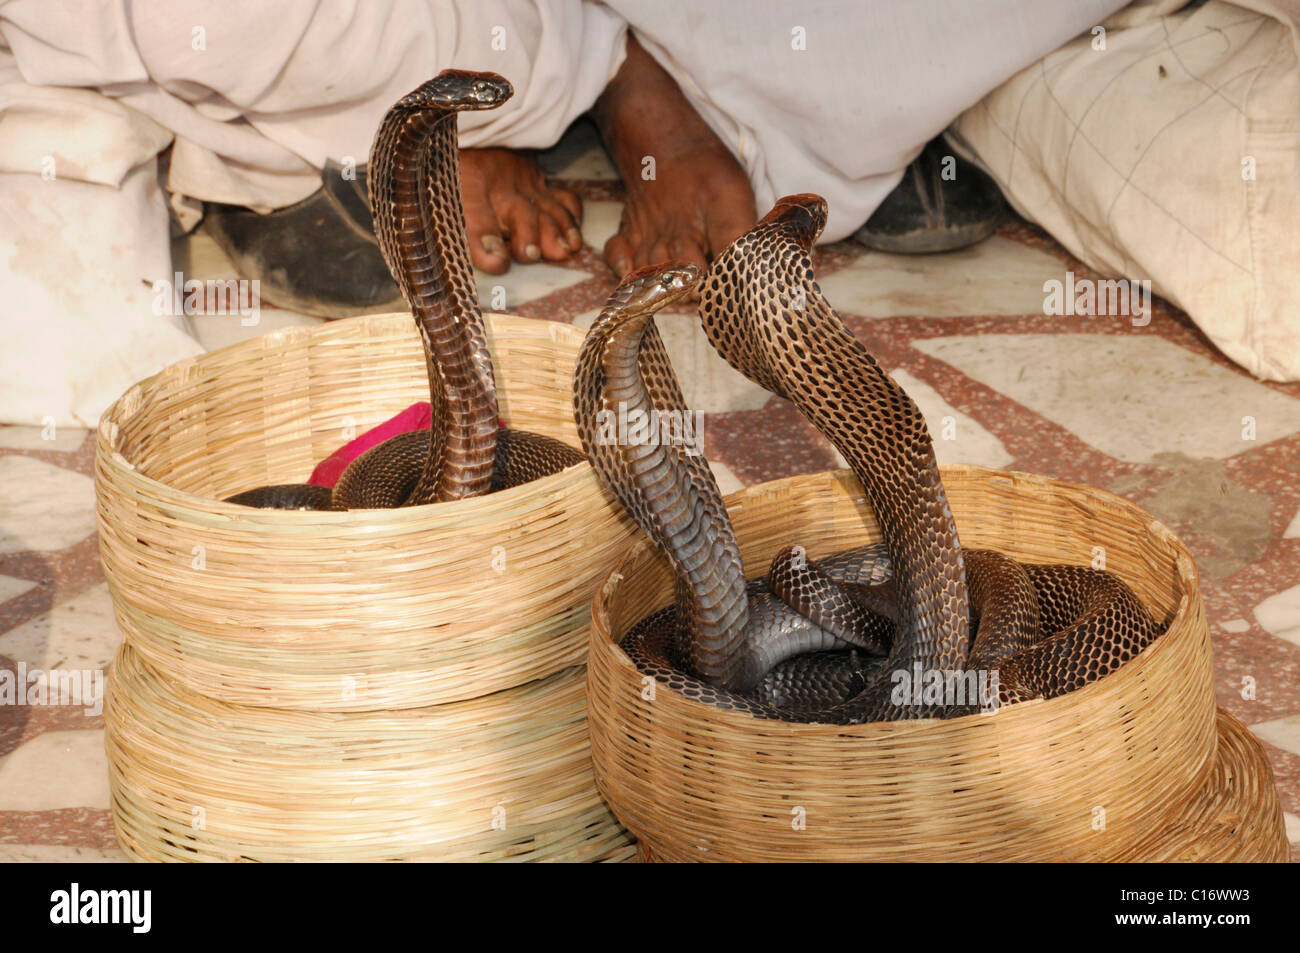 Le charmeur de serpent cobras, Hawa Mahal, le palais des vents, Jaipur, Rajasthan, Inde du Nord, l'Asie Banque D'Images